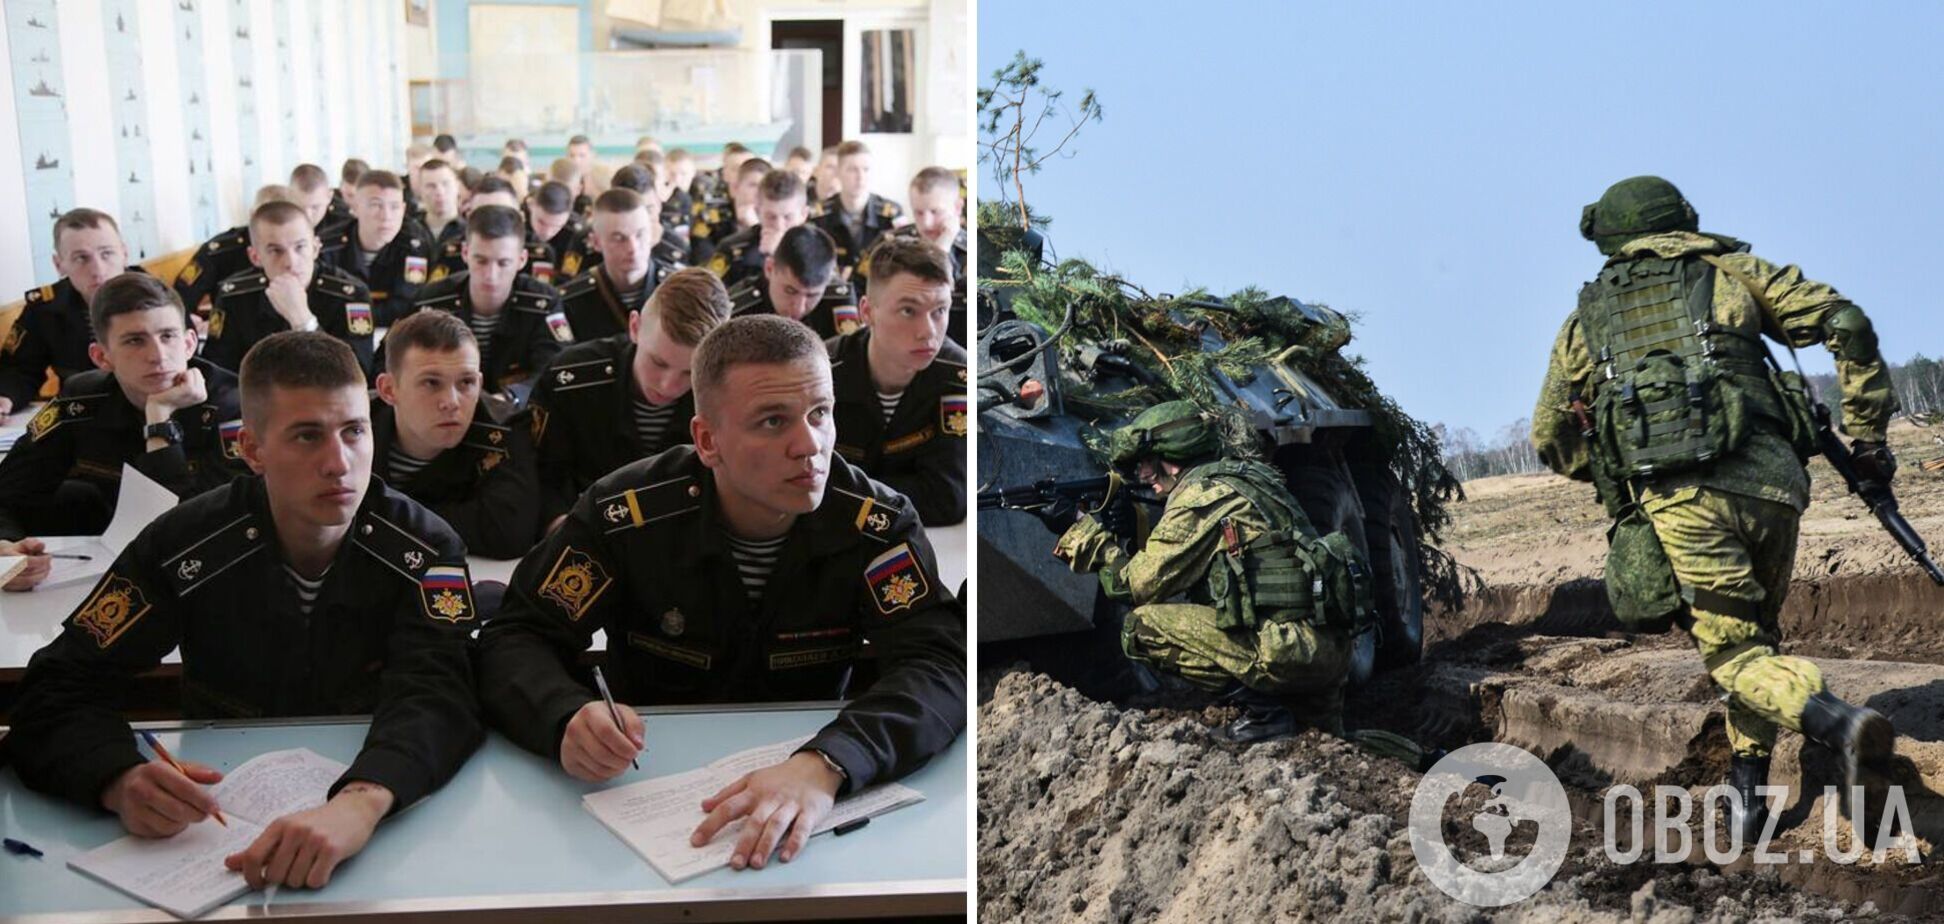 Российский курсантов хотят досрочно выпустить из учебных заведений и отправить на войну